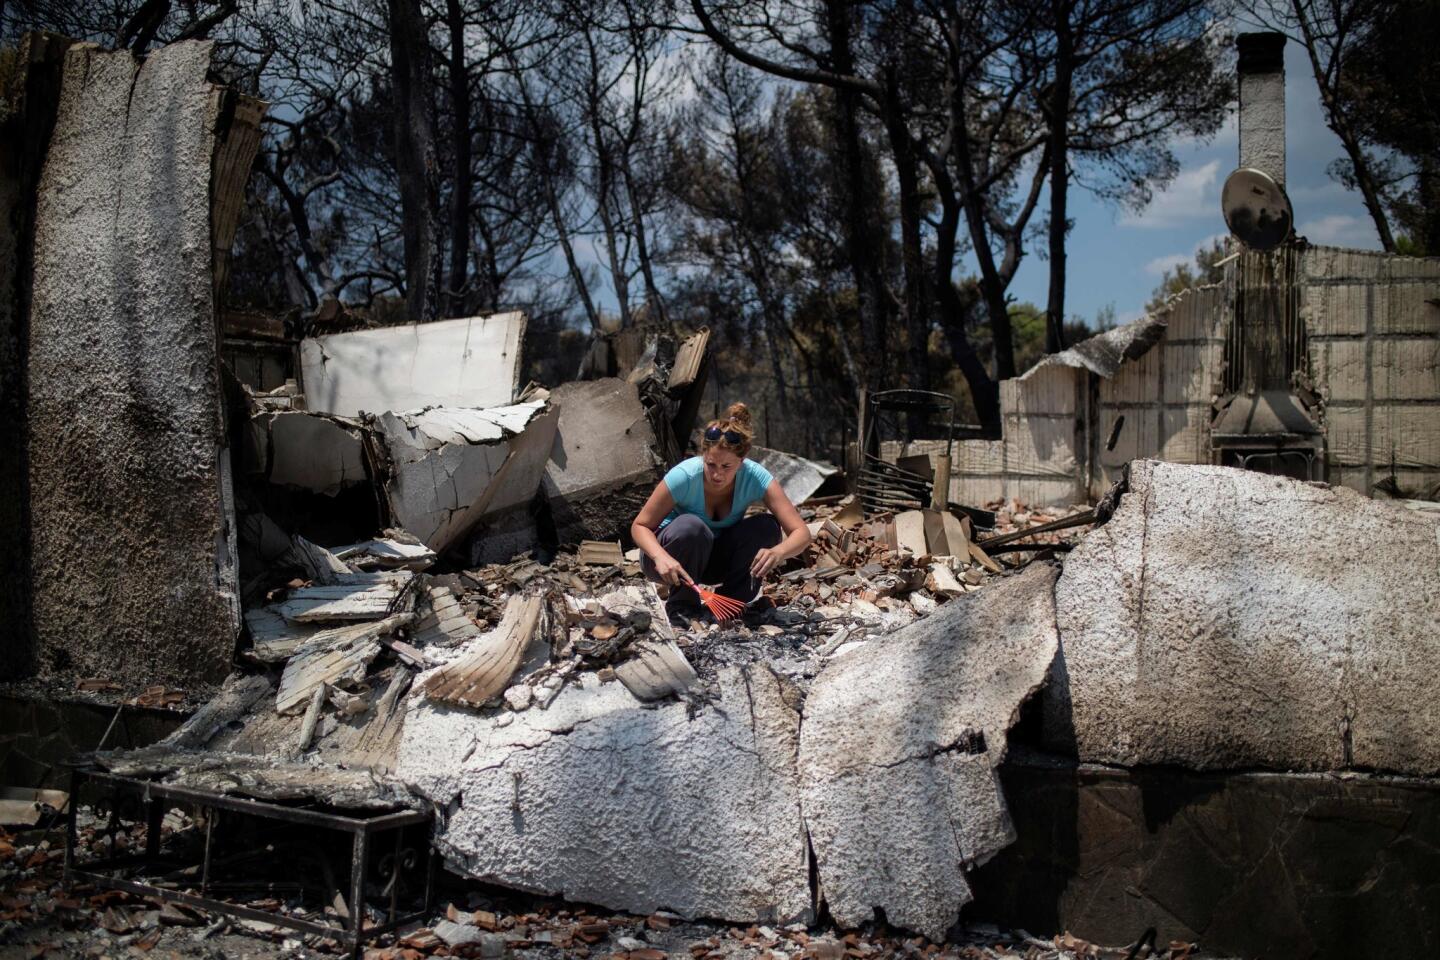 Una mujer busca rescatar algo de su hogar quemado, cerca de Atenas. Más de 2,000 viviendas fueron dañadas en un fatal incendio forestal